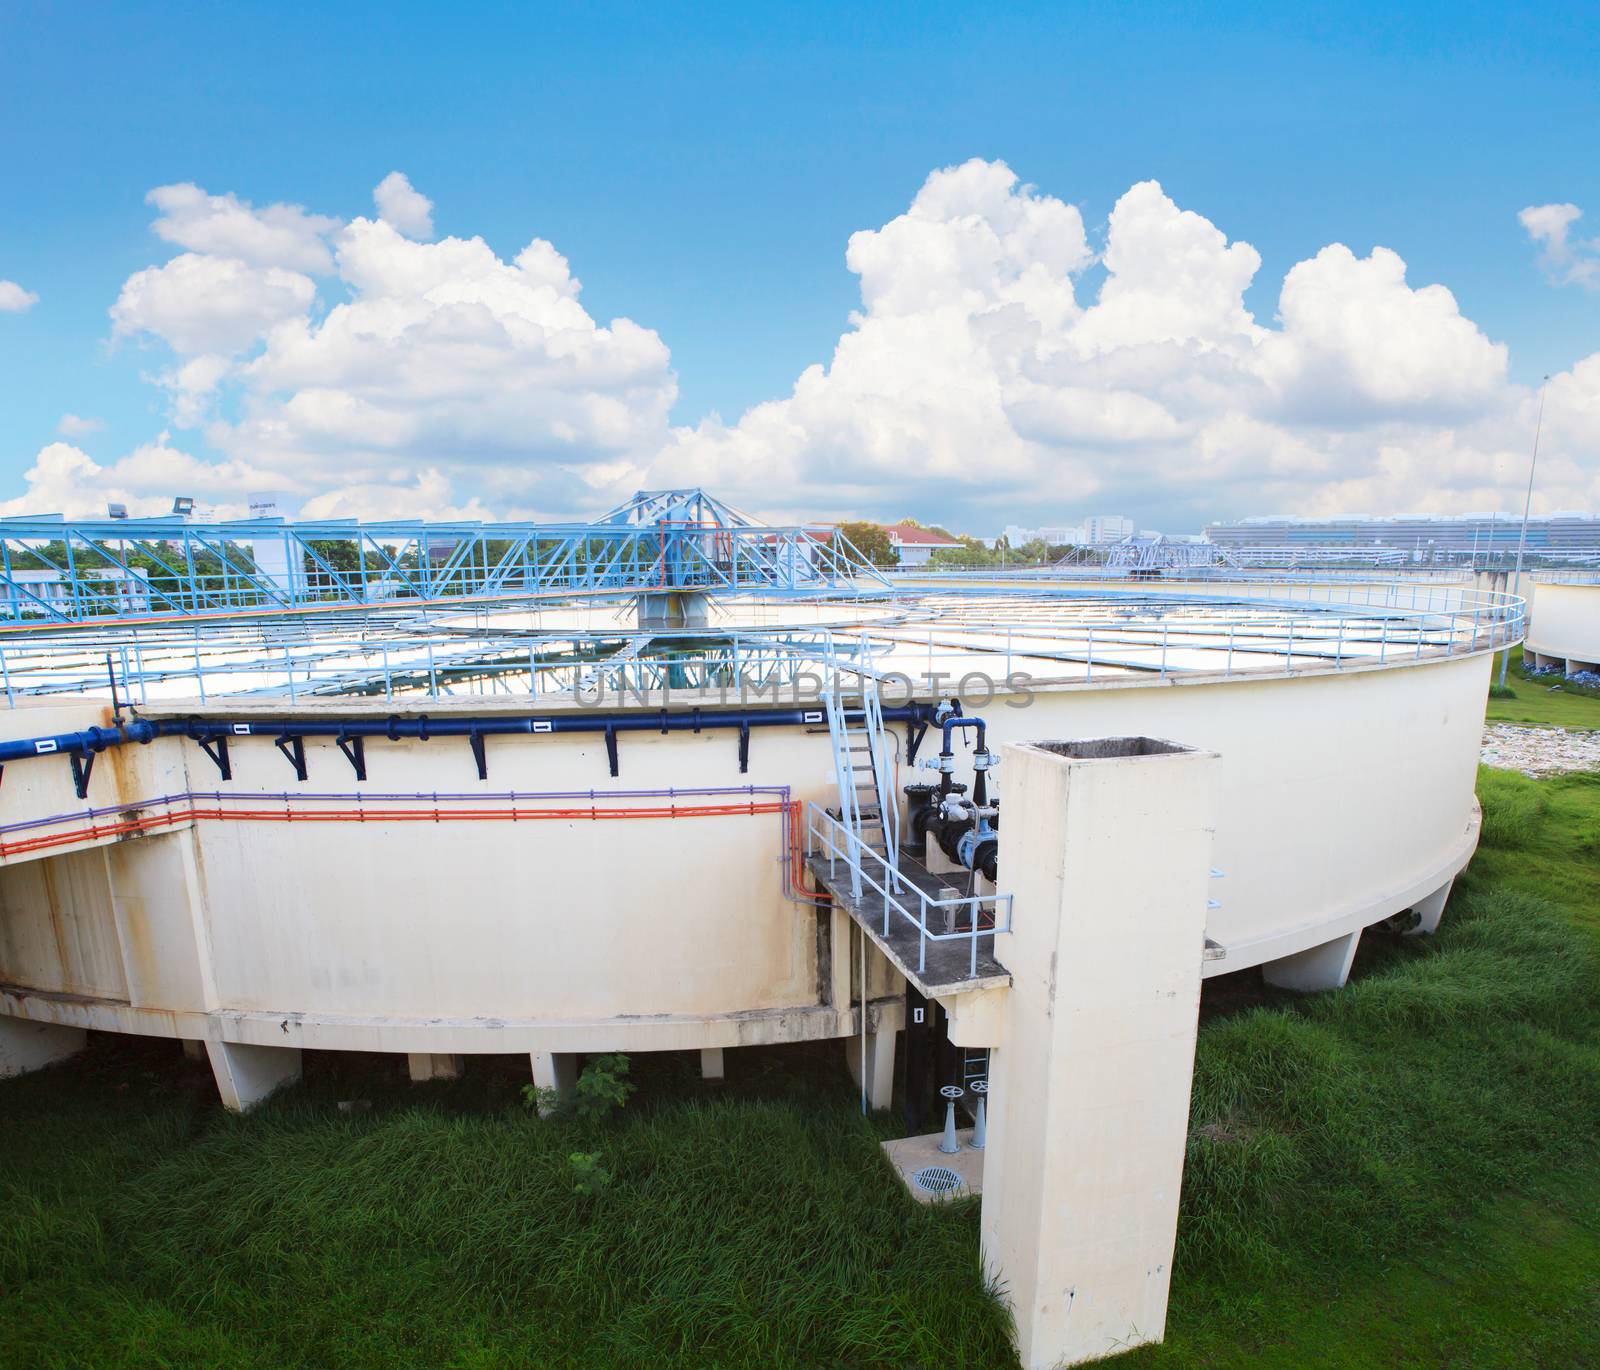 big tank of water supply in metropolitan water work industry plant site 